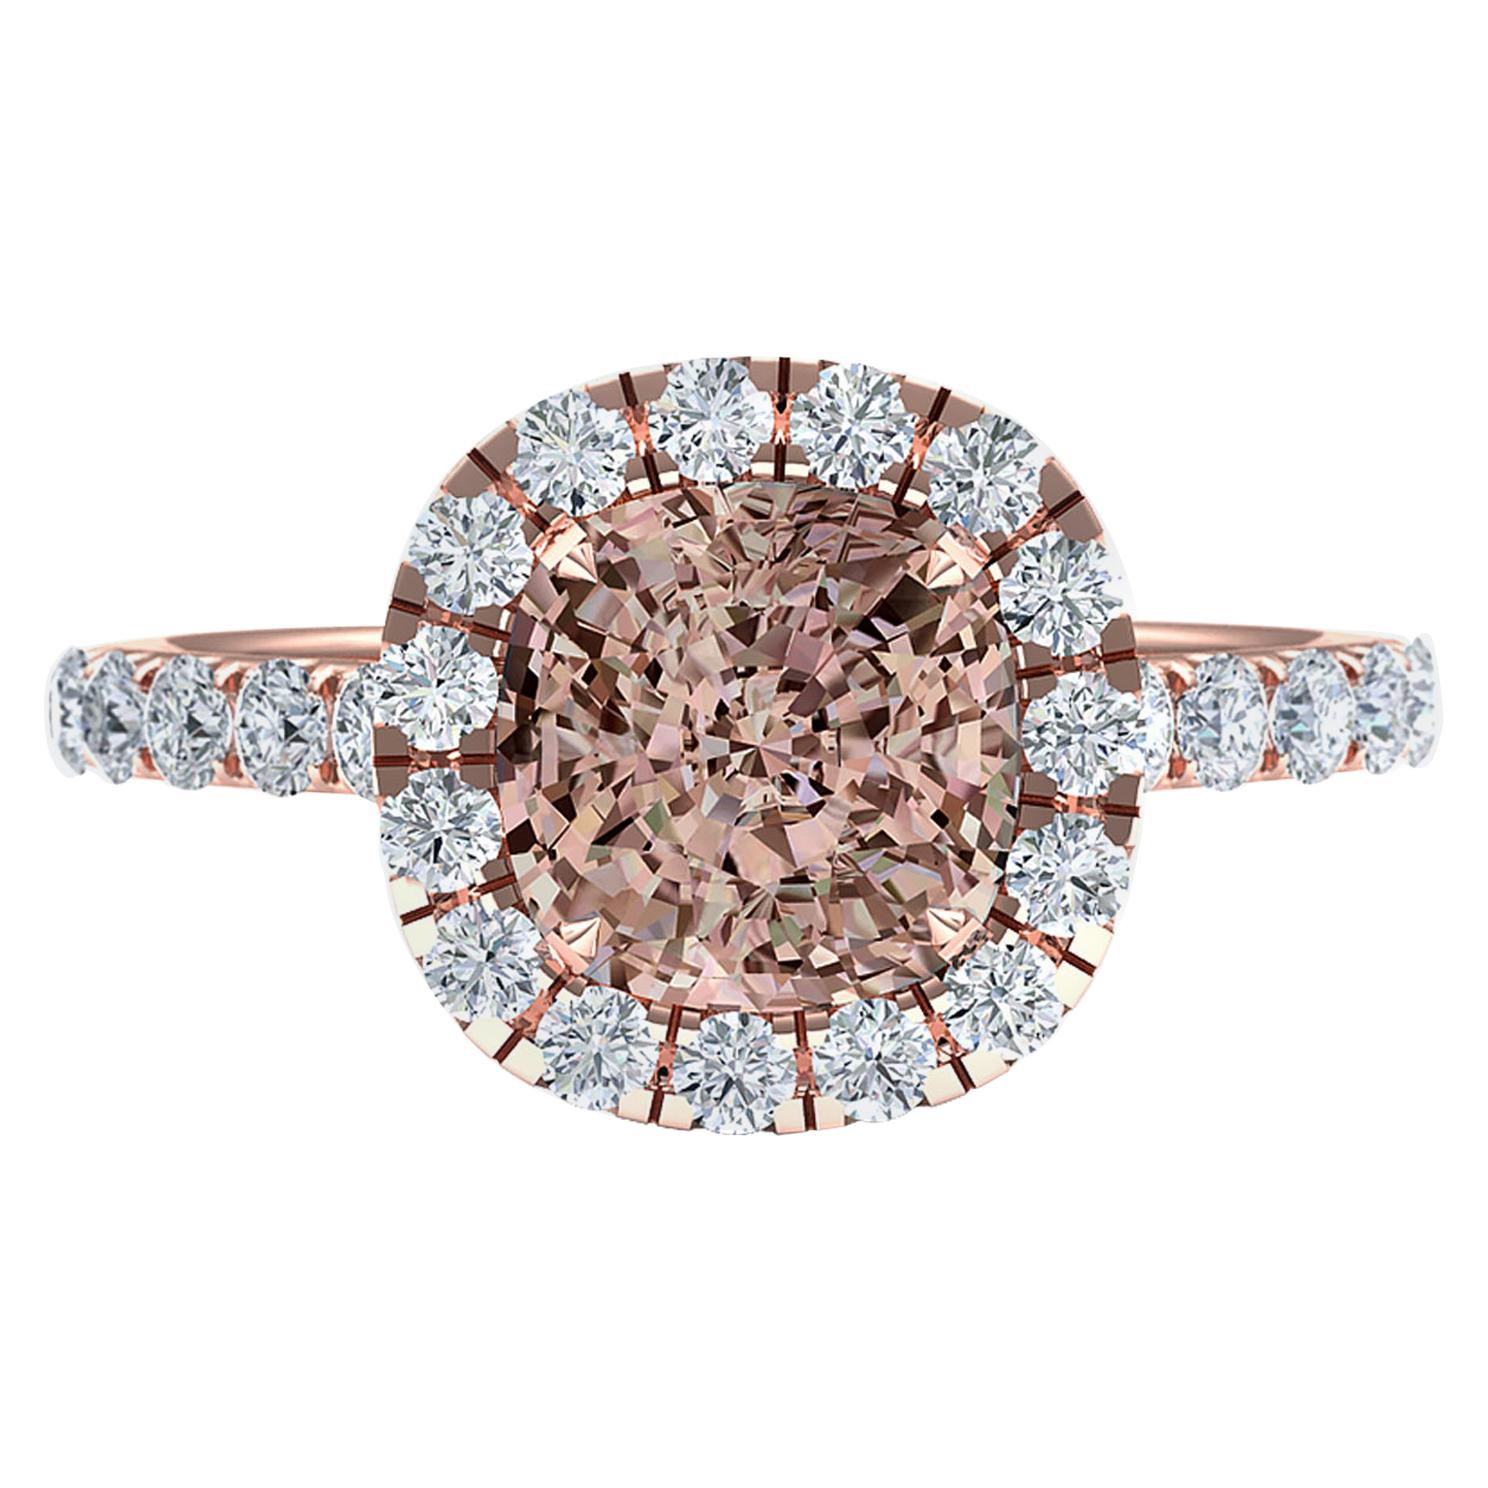 2.7 Carat Light Pink Looking GIA Certified Orange Brown Cushion Diamond Ring For Sale